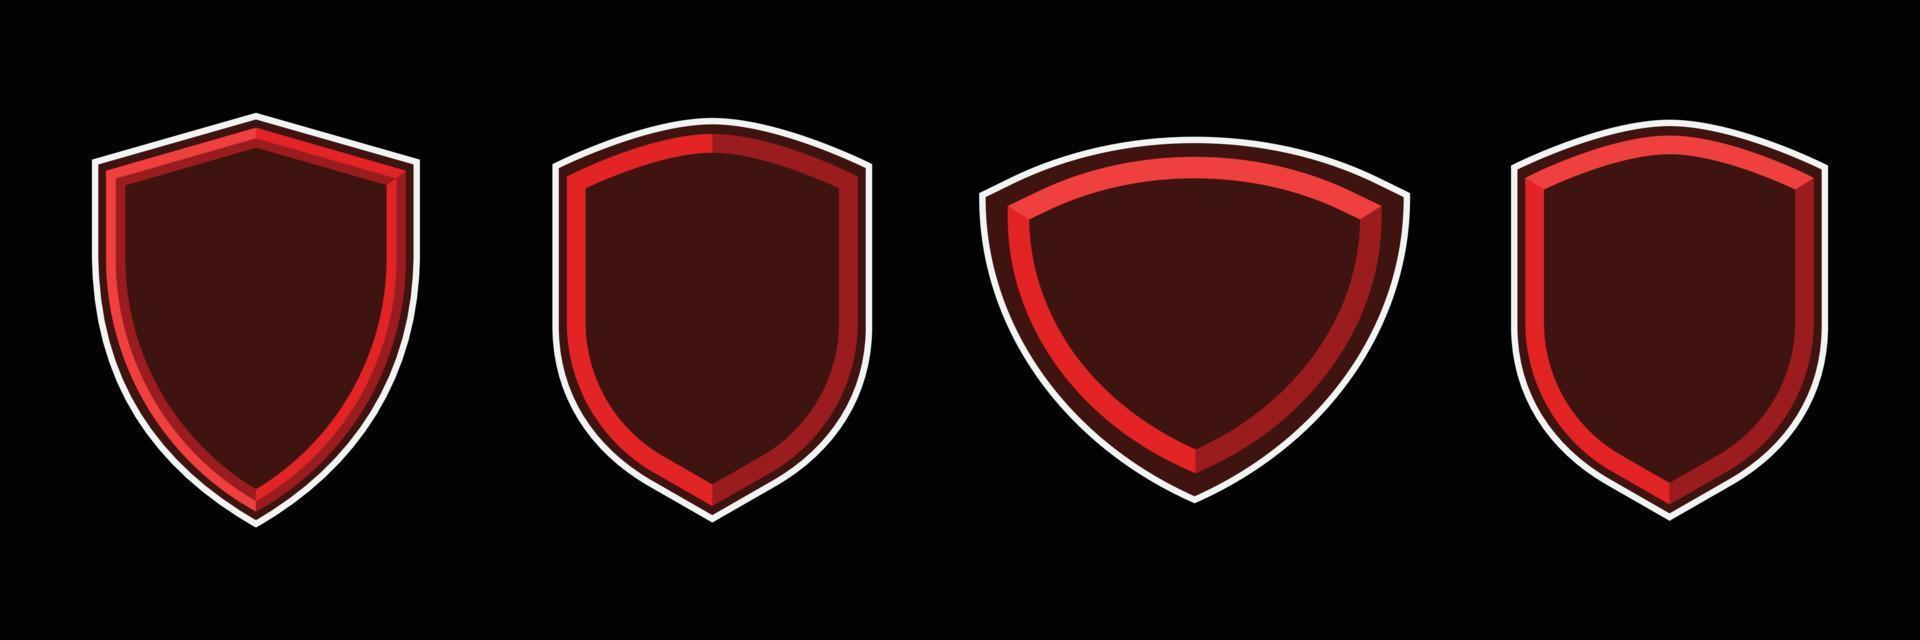 Distintivo 3d con ombra e contorno. scudo esport in un modello vuoto. set di badge scudo per logo esport. vettore